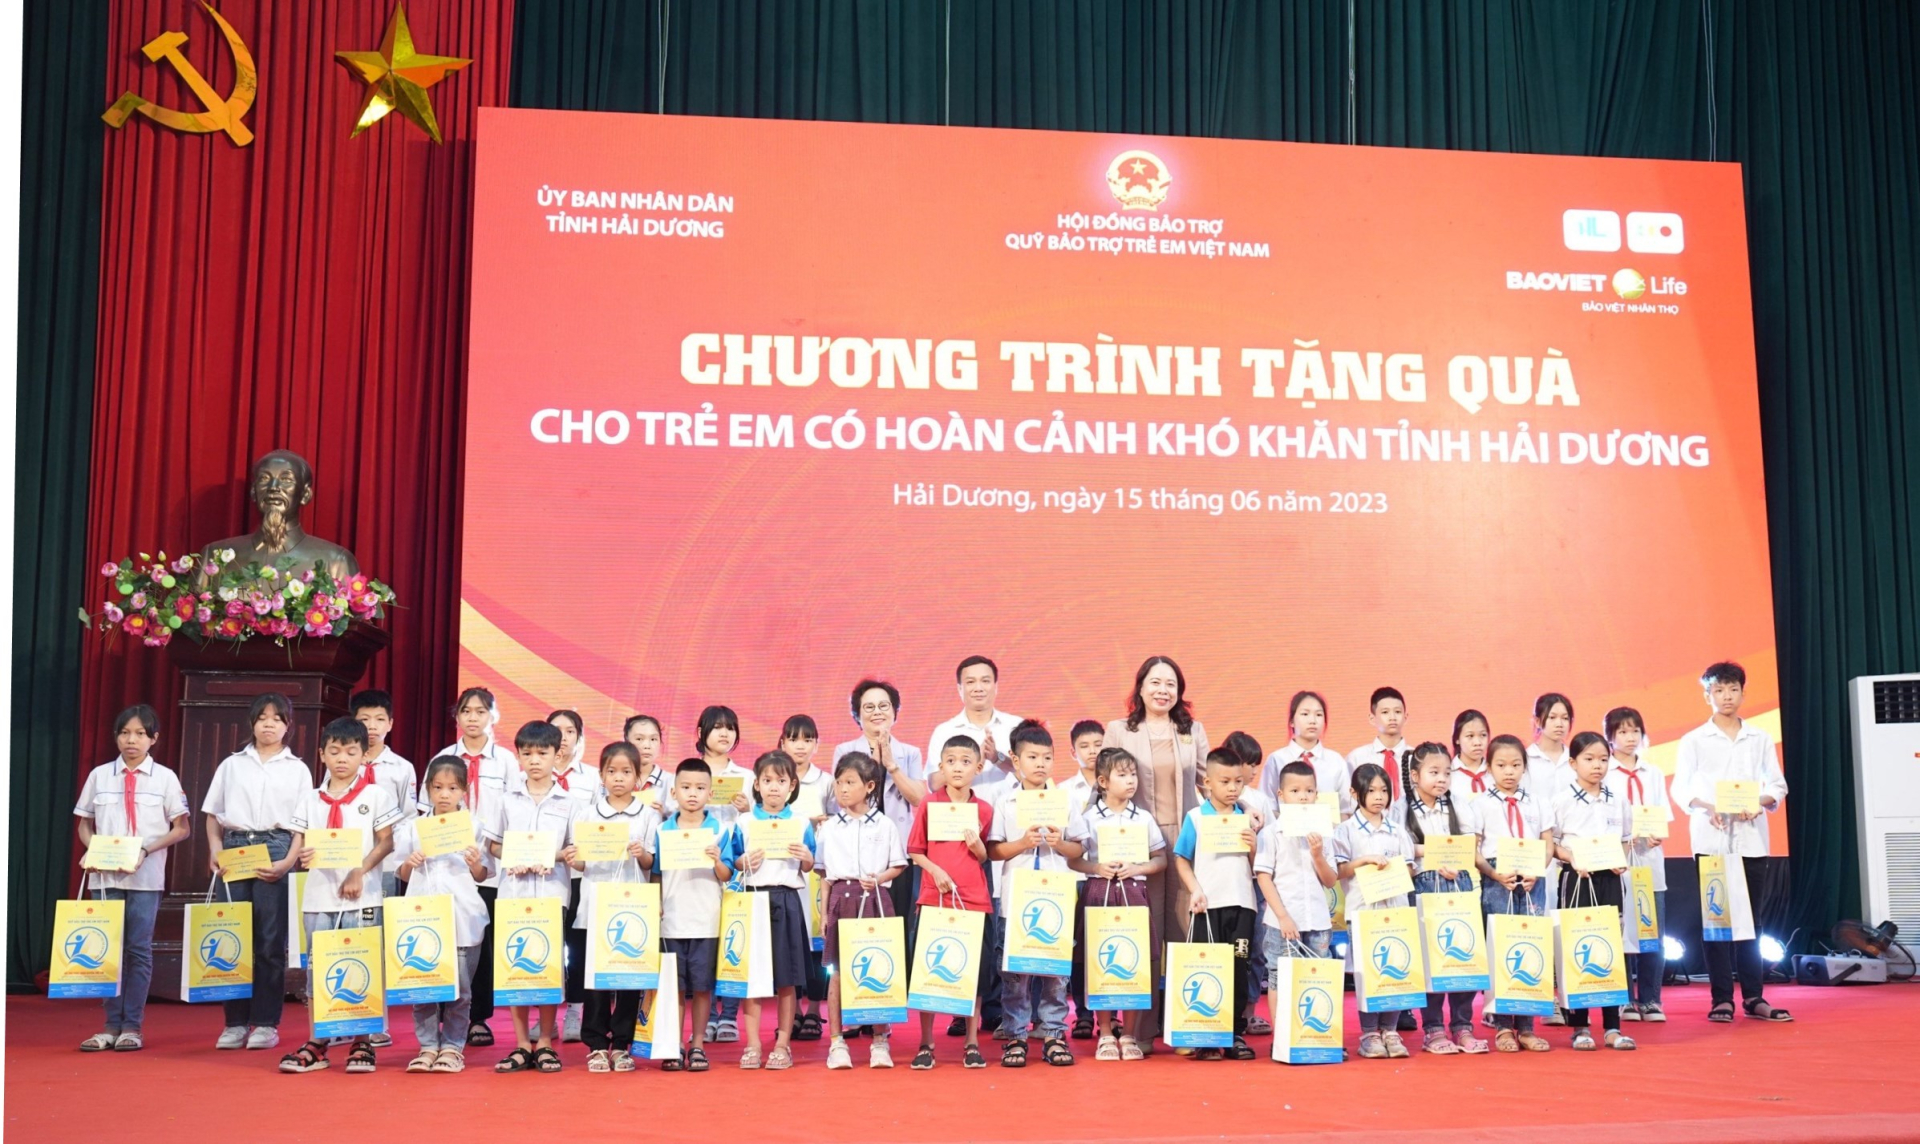 Phó Chủ tịch nước Võ Thị Ánh Xuân - Chủ tịch HĐBT Quỹ BTTEVN trao học bổng cho trẻ em có hoàn cảnh đặc biệt khó khăn tỉnh Hải Dương nhân Tháng hành đồng vì trẻ em năm 2023